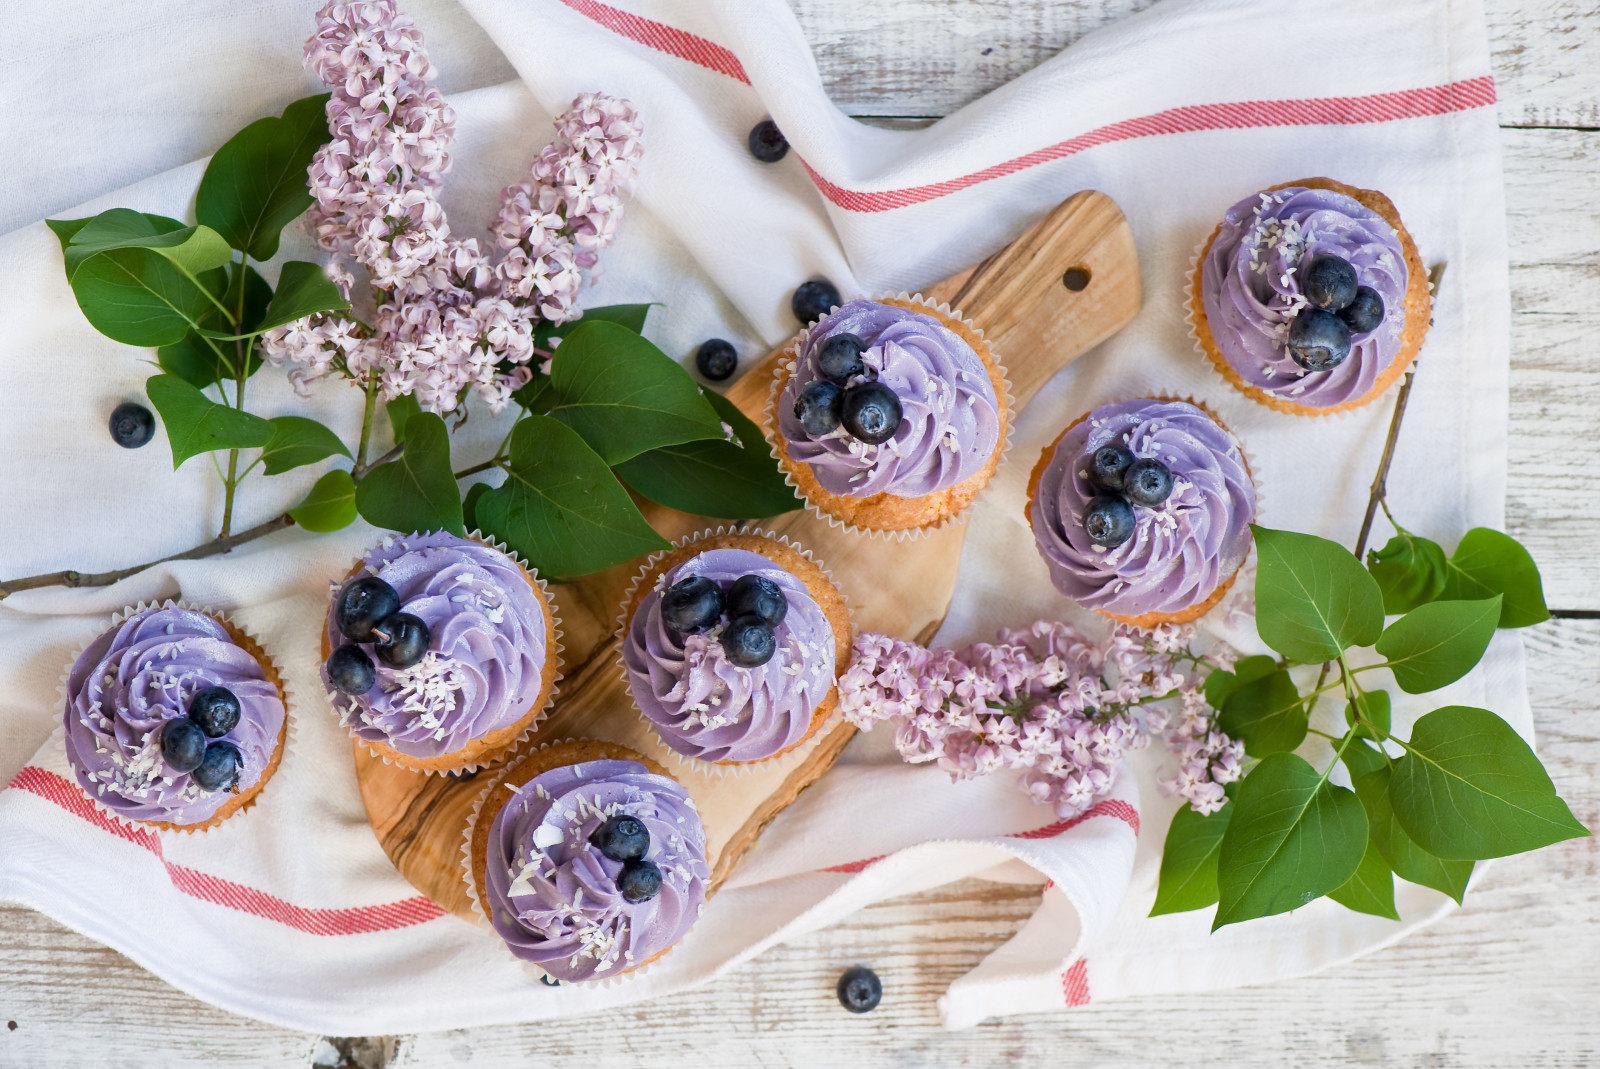 紫丁香, 浆果, 蓝莓, 奶油, 纸杯蛋糕, 毛巾